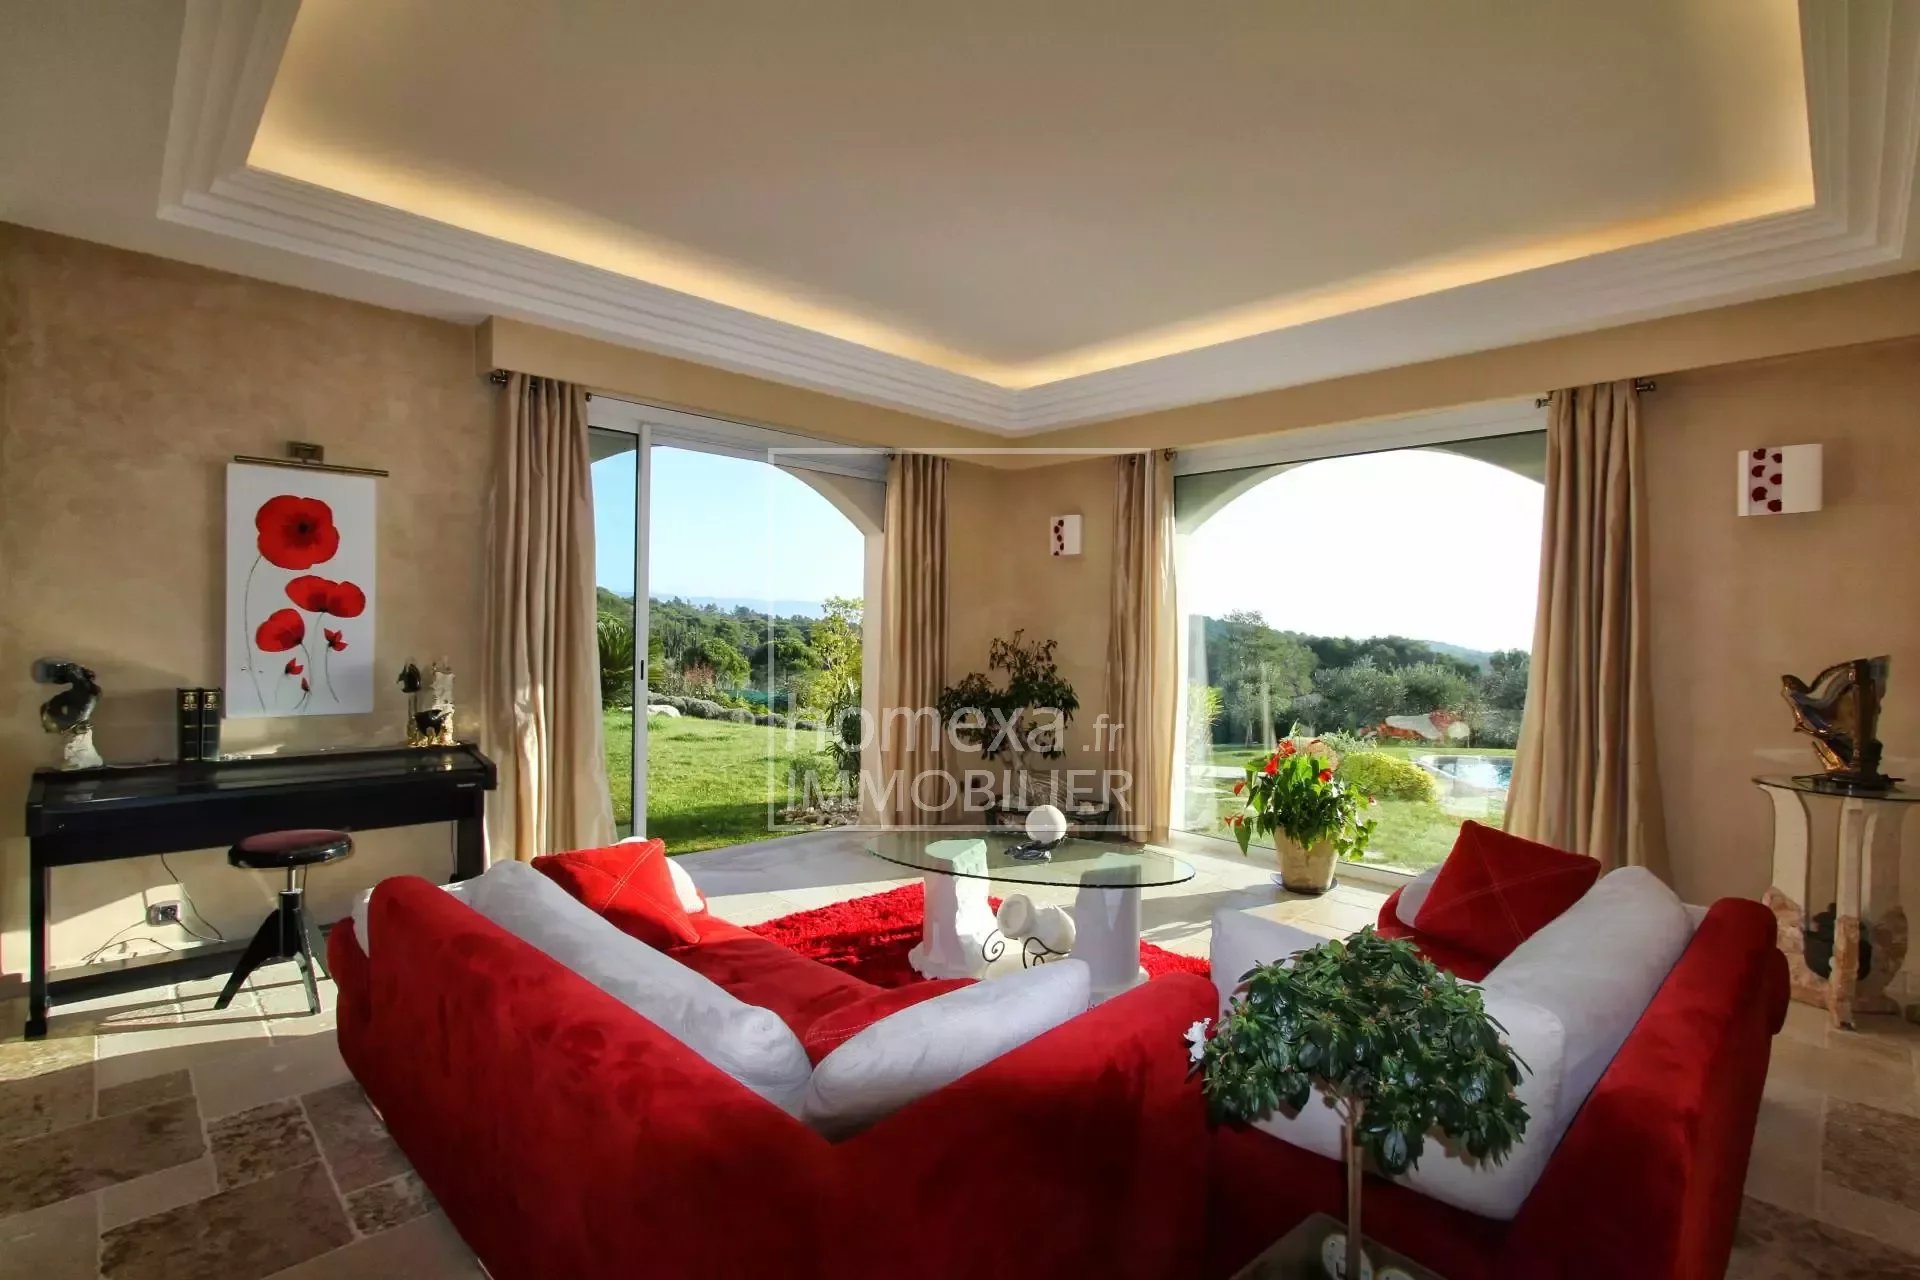 prestigious property mougins : lounge area view